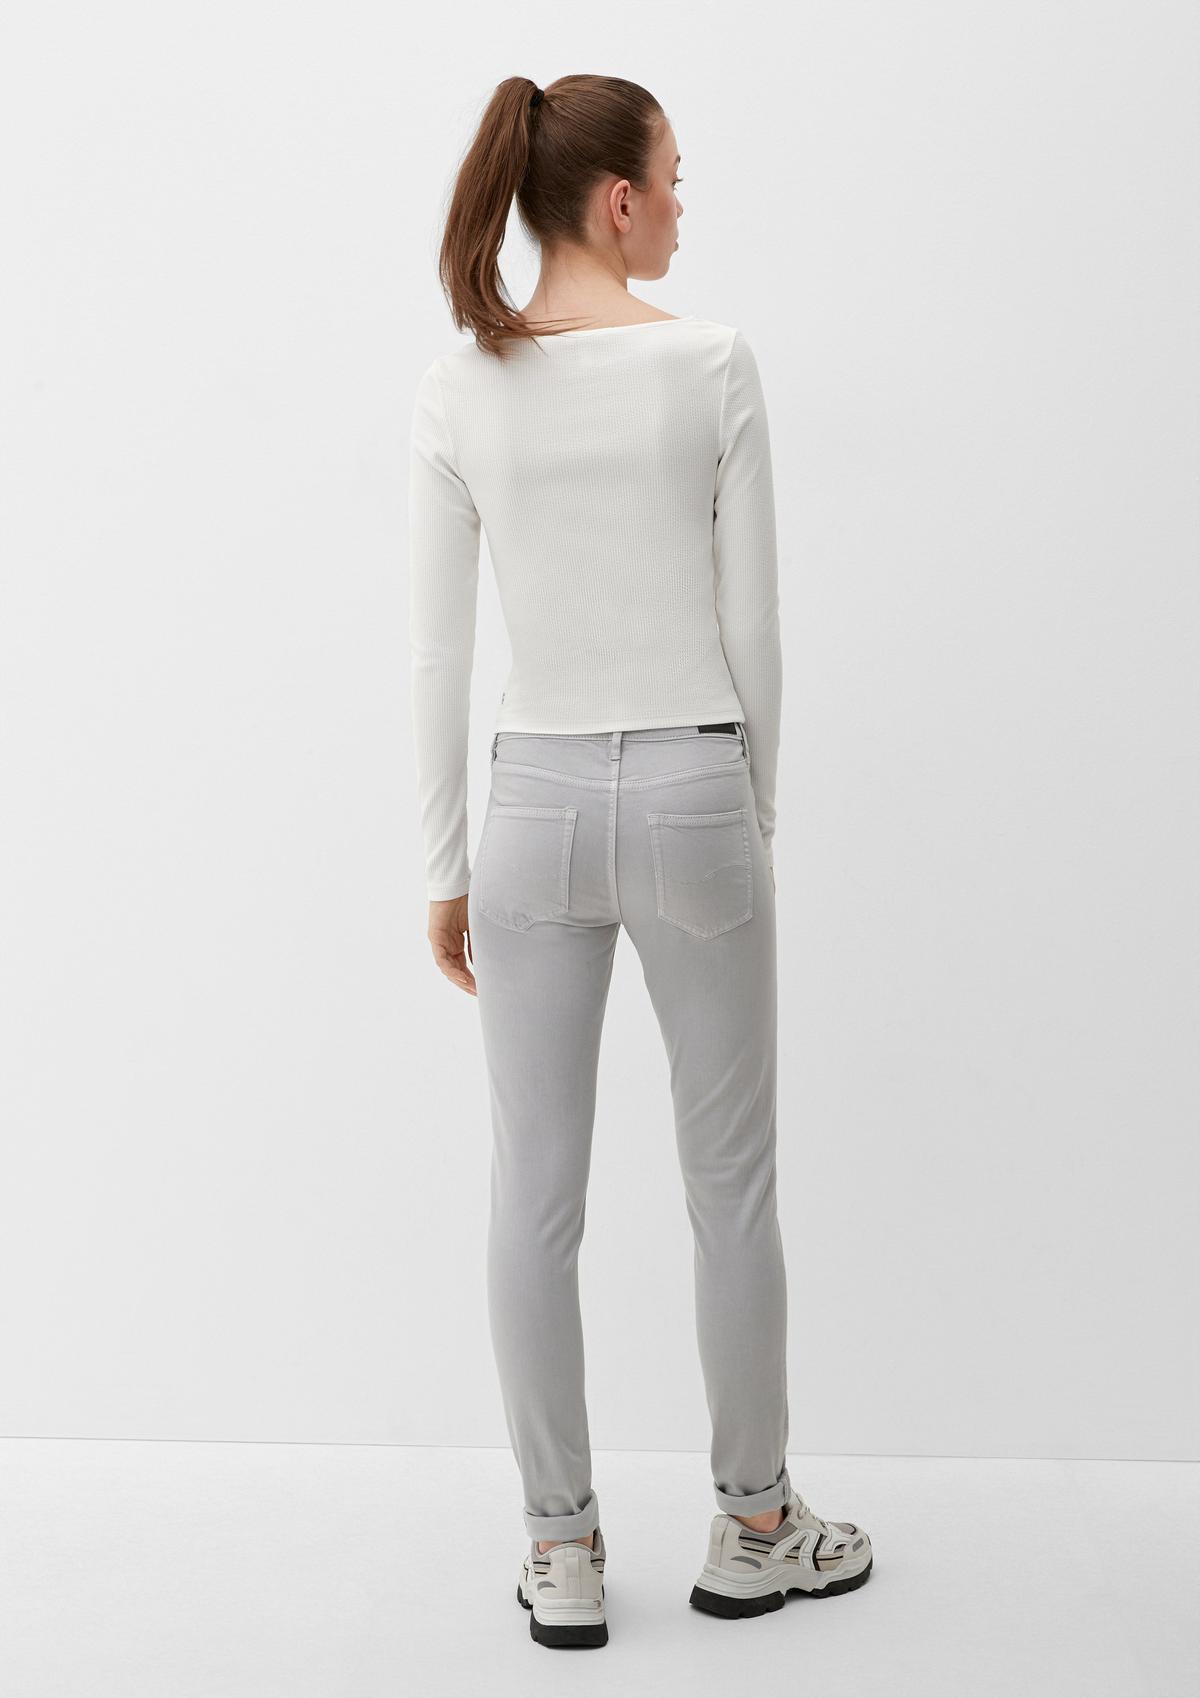 Skinny design in five-pocket jeans rose soft fit: - a